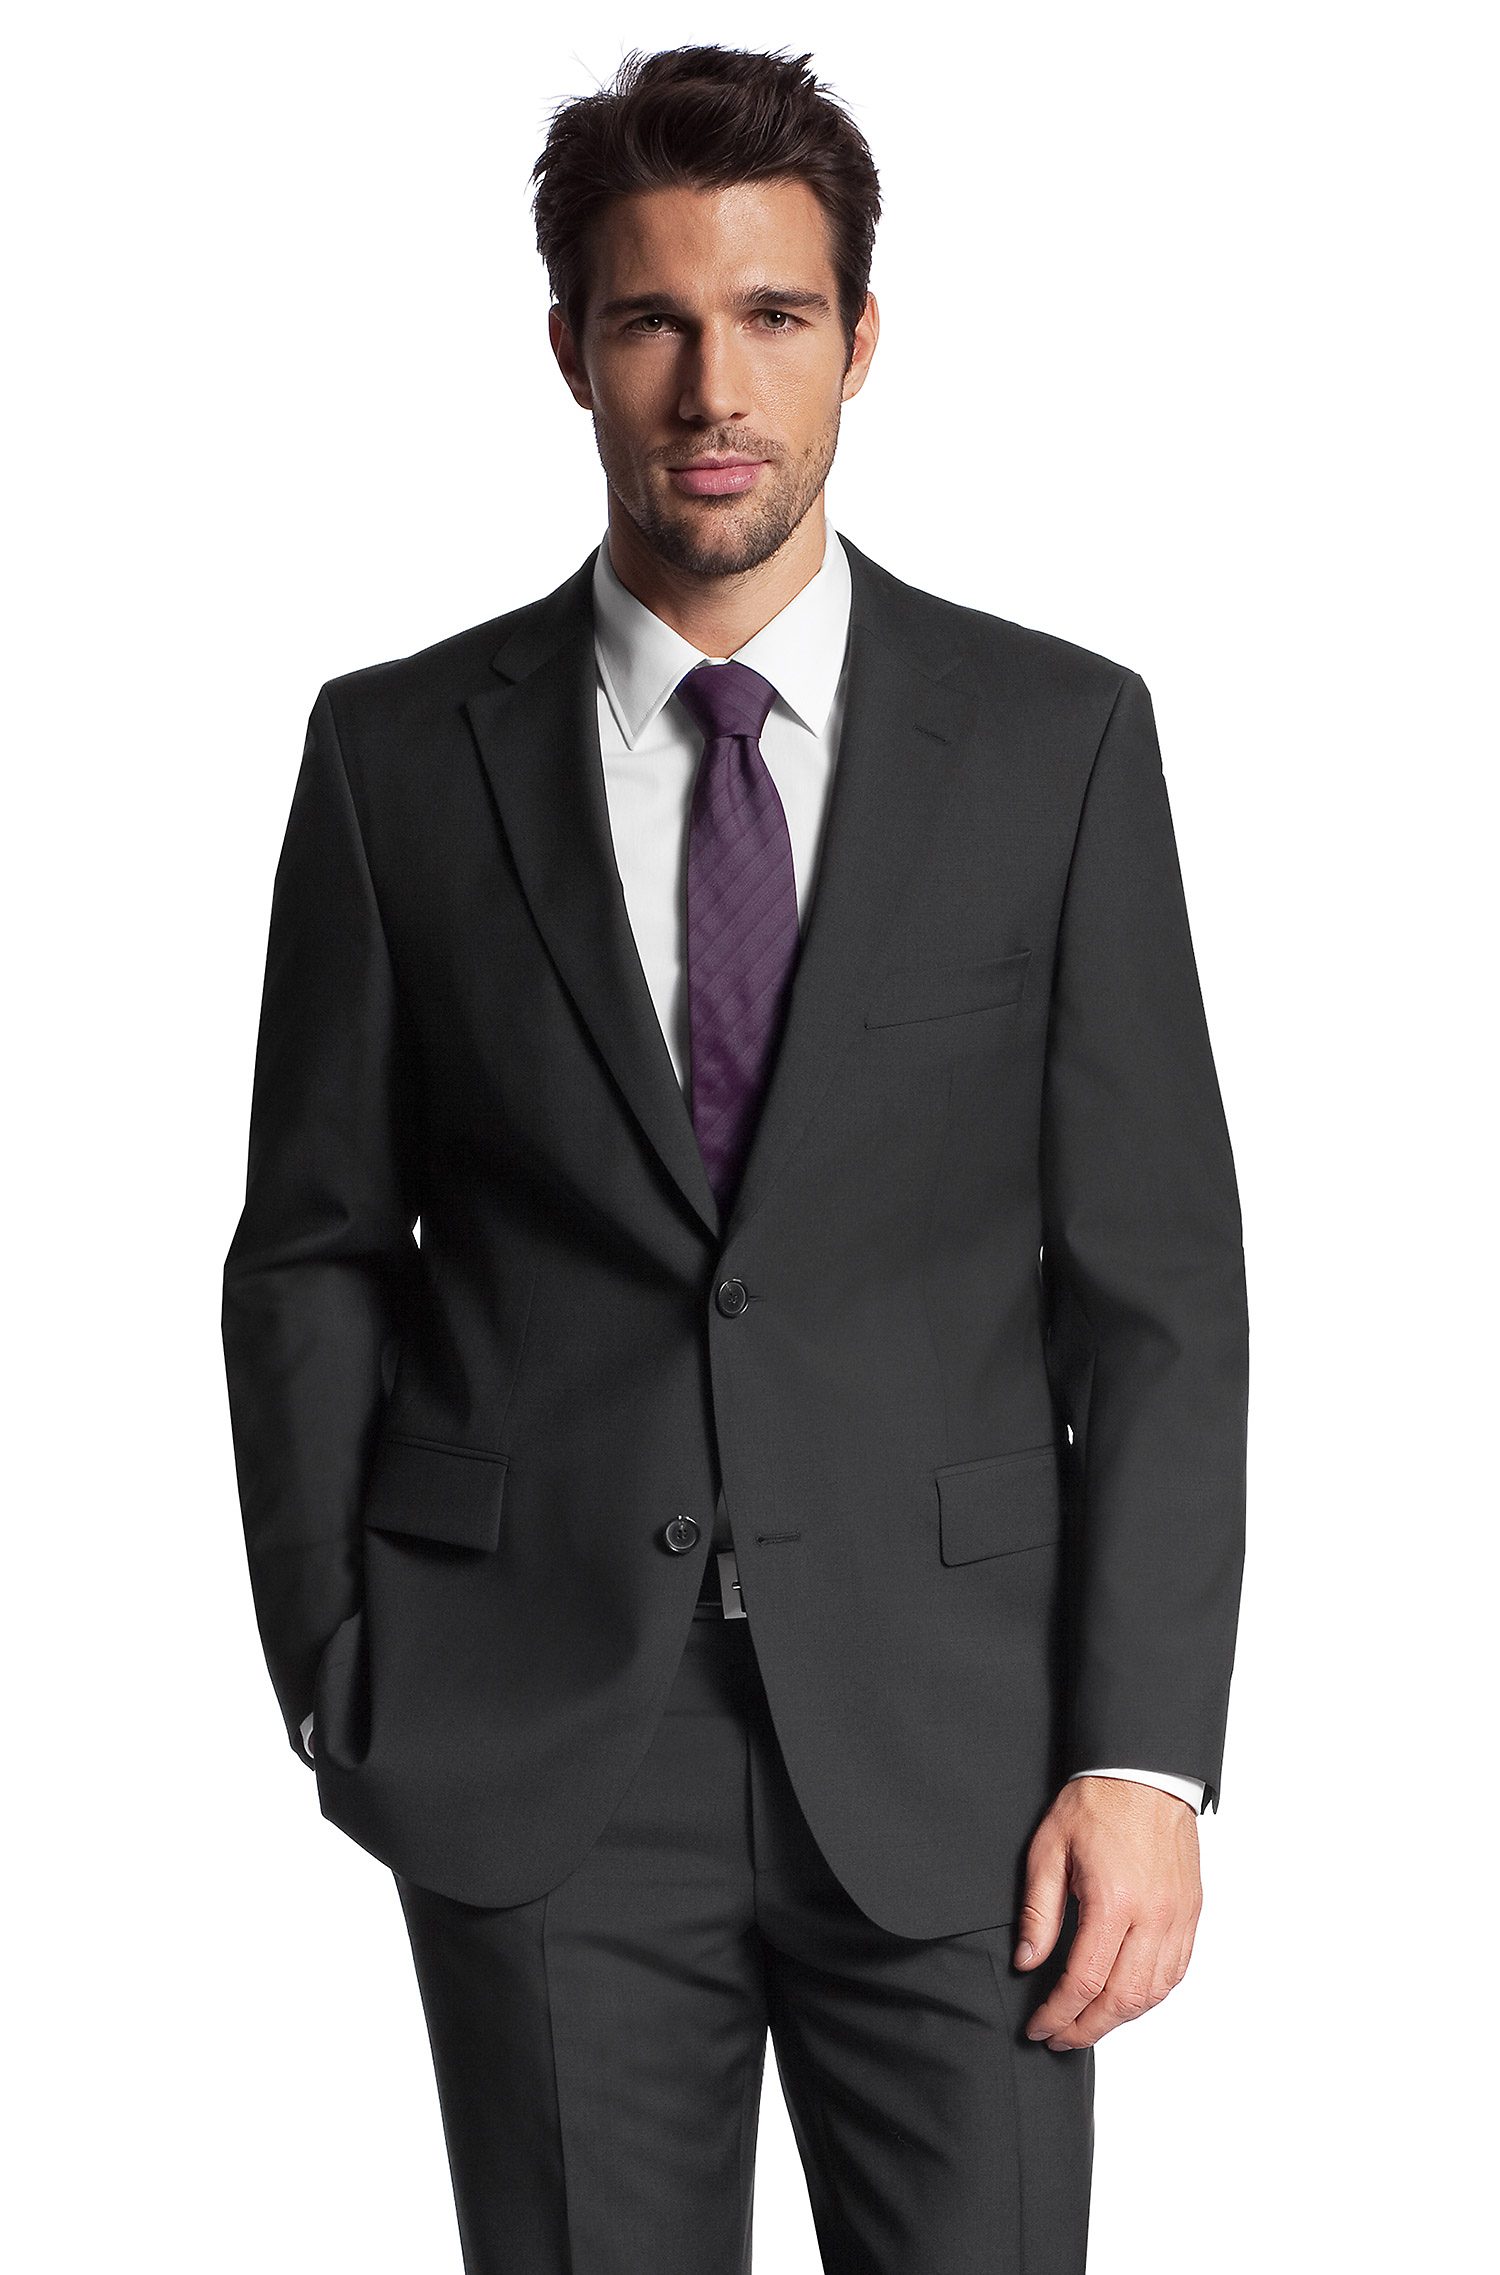 Full Business Suit For Men